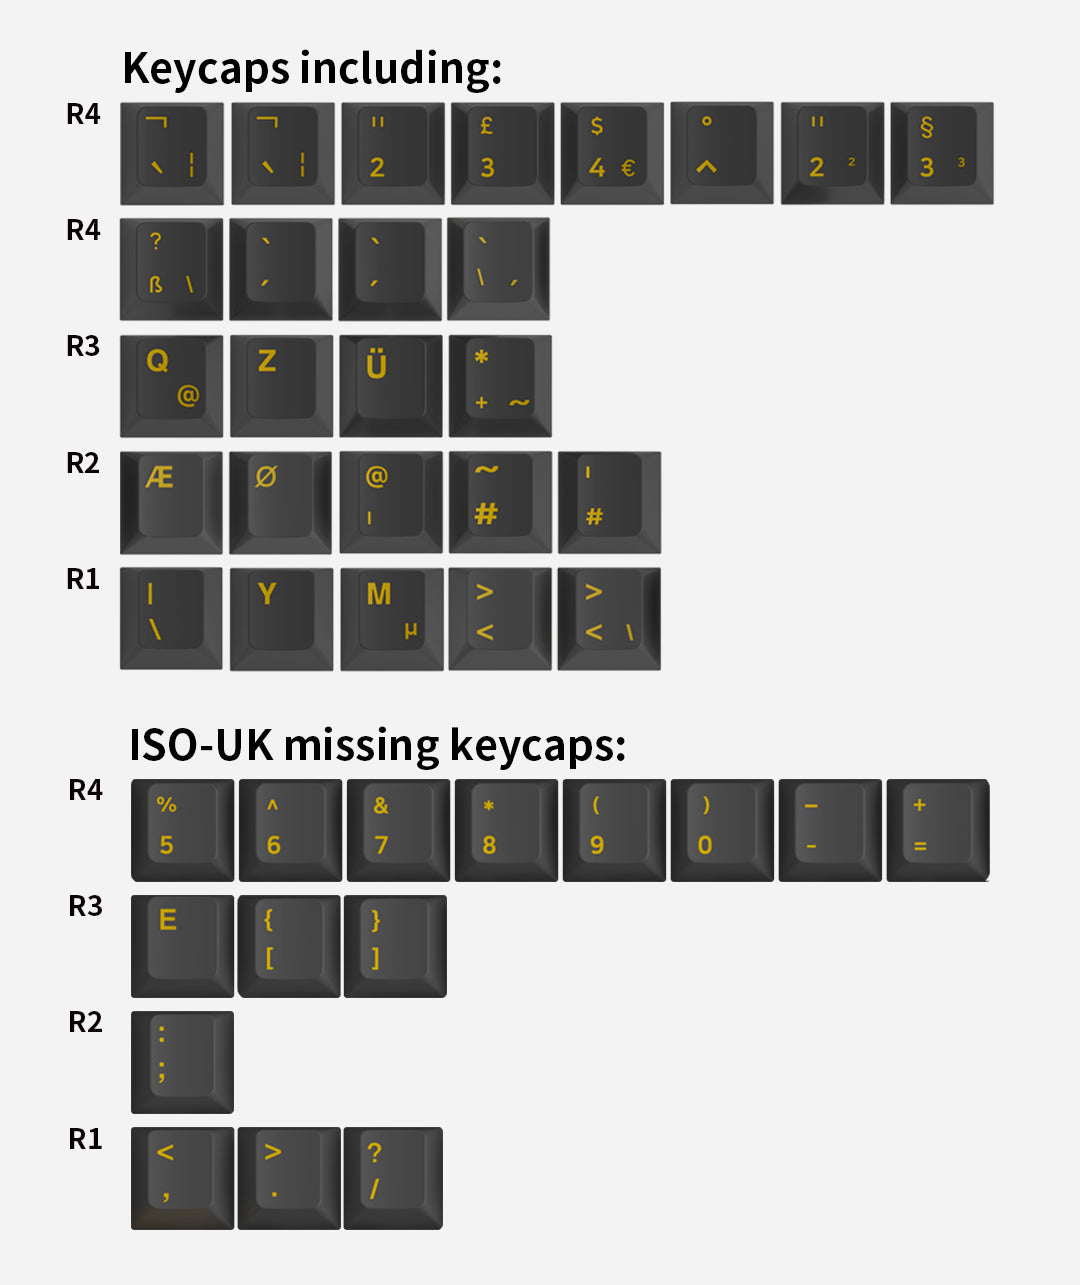 ISO-DE Extra Keycap Set (21-Key)